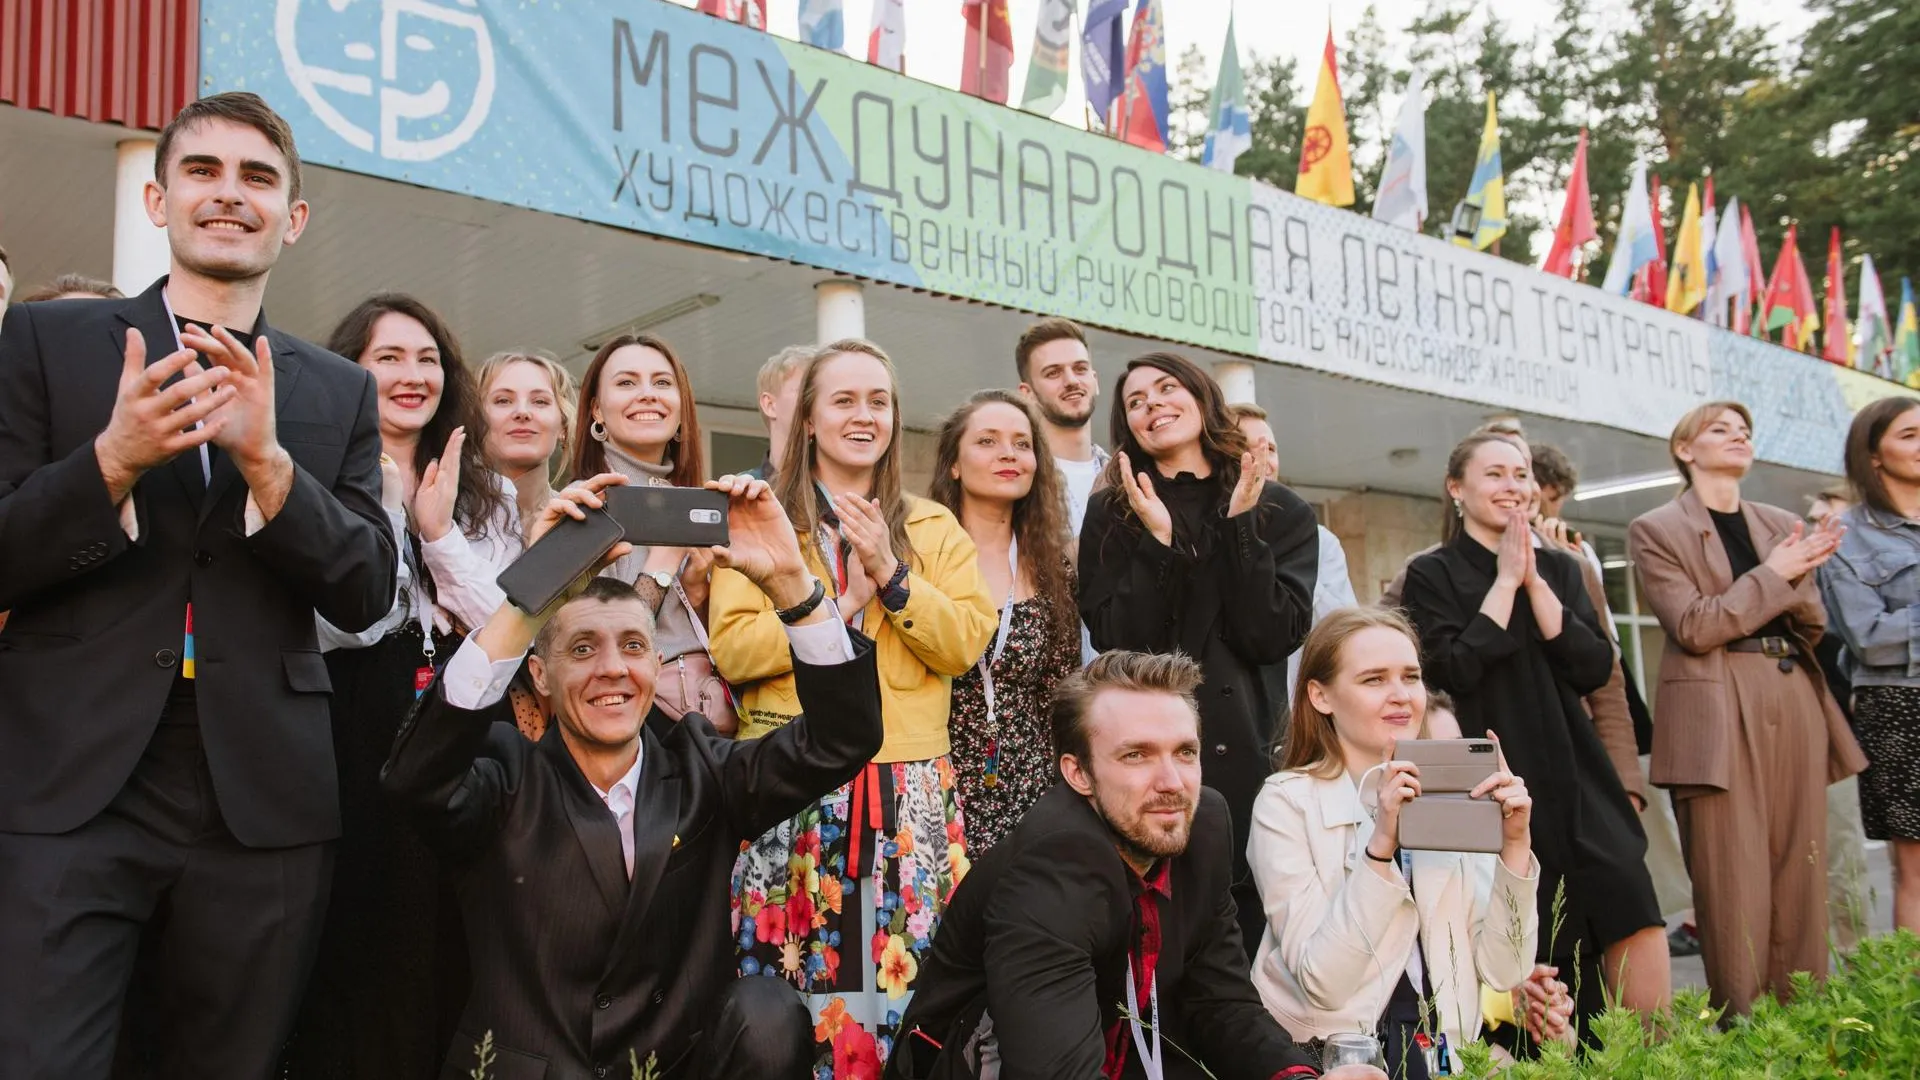 Международная летняя театральная школа откроется в Звенигороде 2 июня